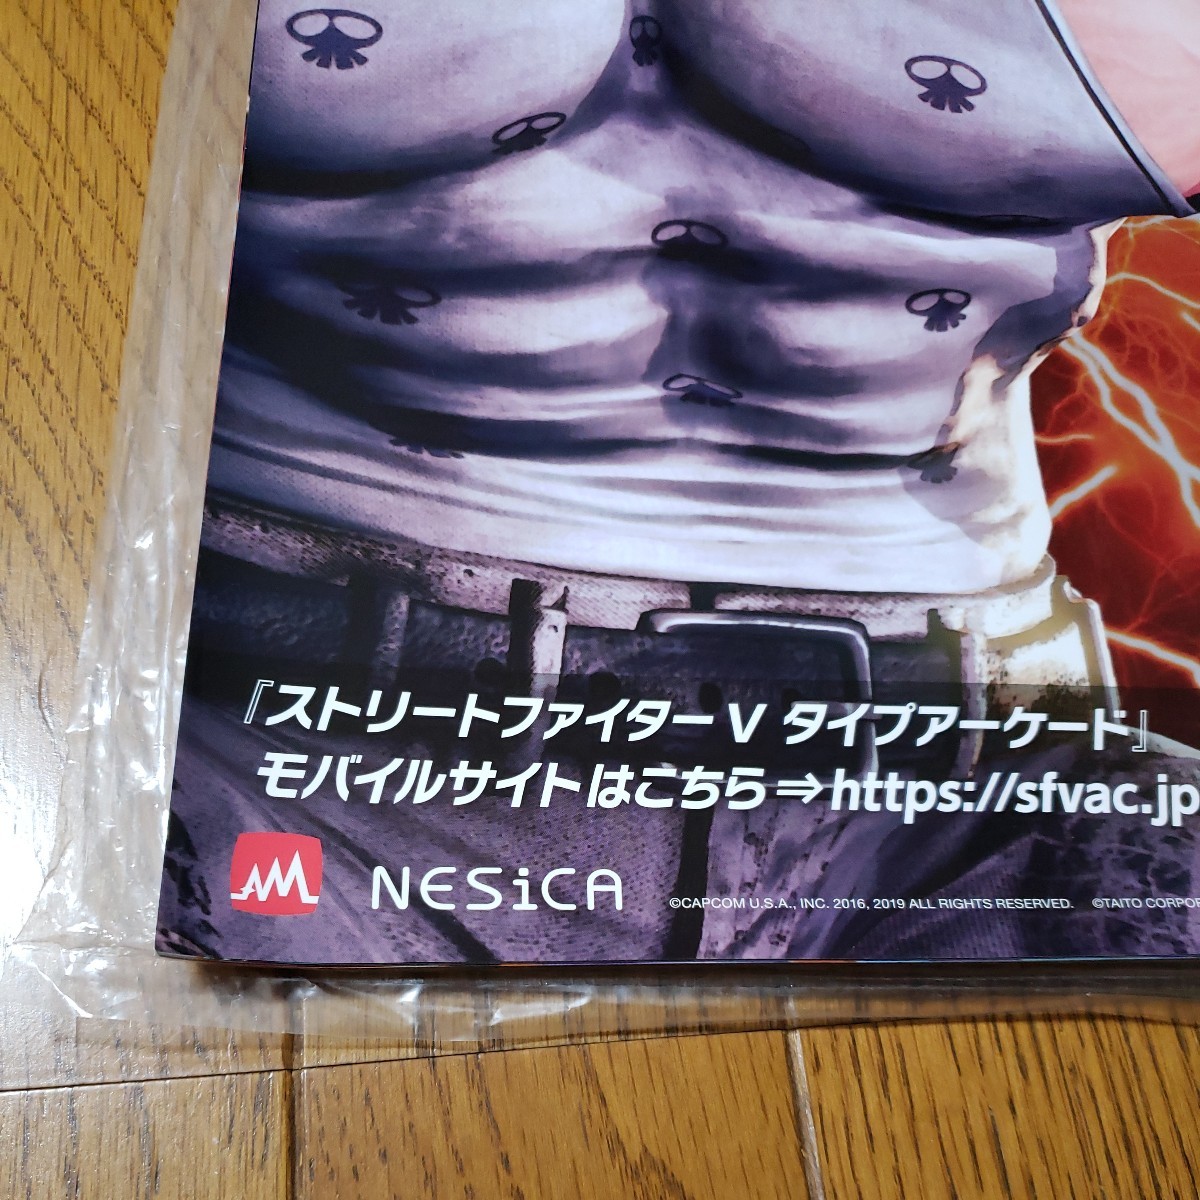  Capcom Street Fighter Vabige il tanzaku poster 